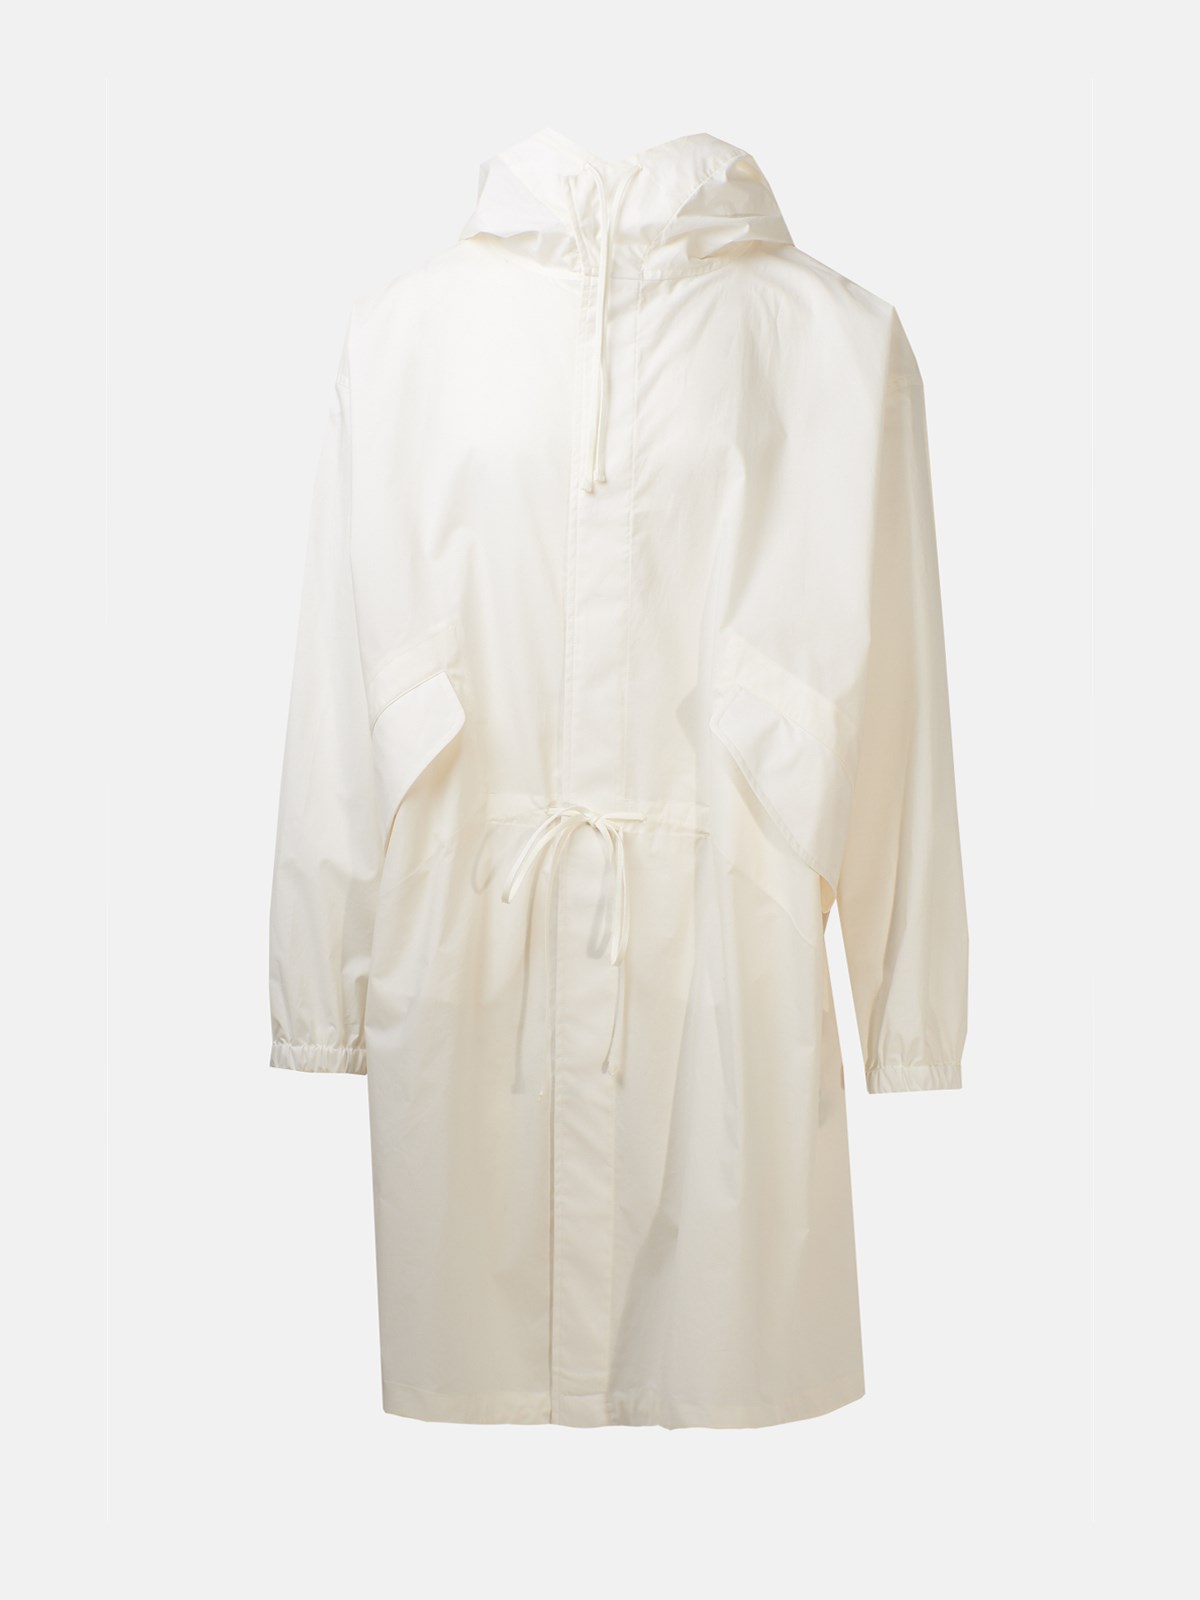 Jil Sander White Raincoat